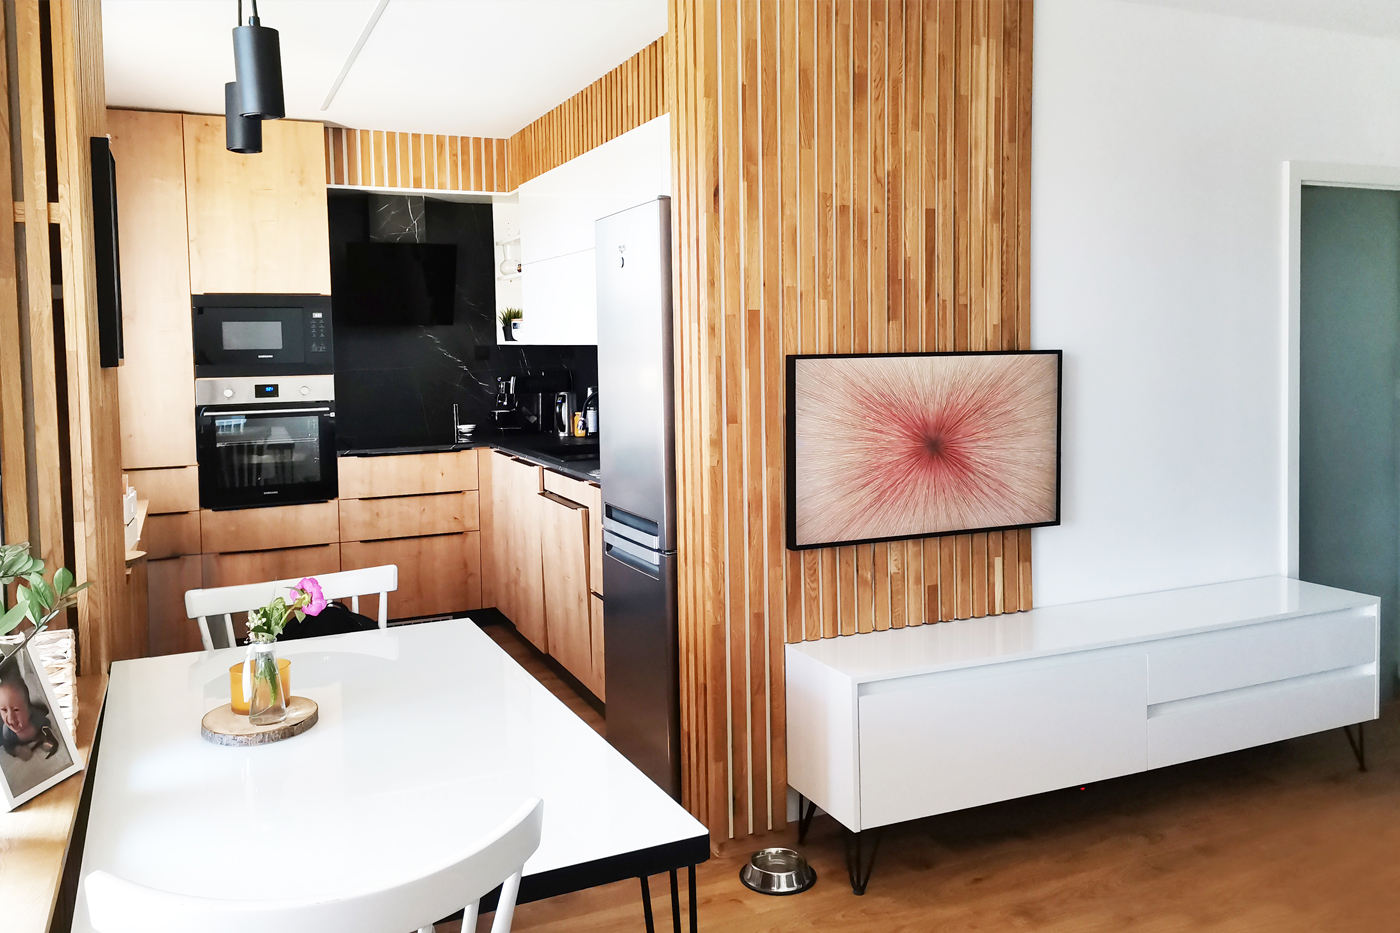 Obývací pokoj s kuchyní v bytě nedaleko centra Ostravy